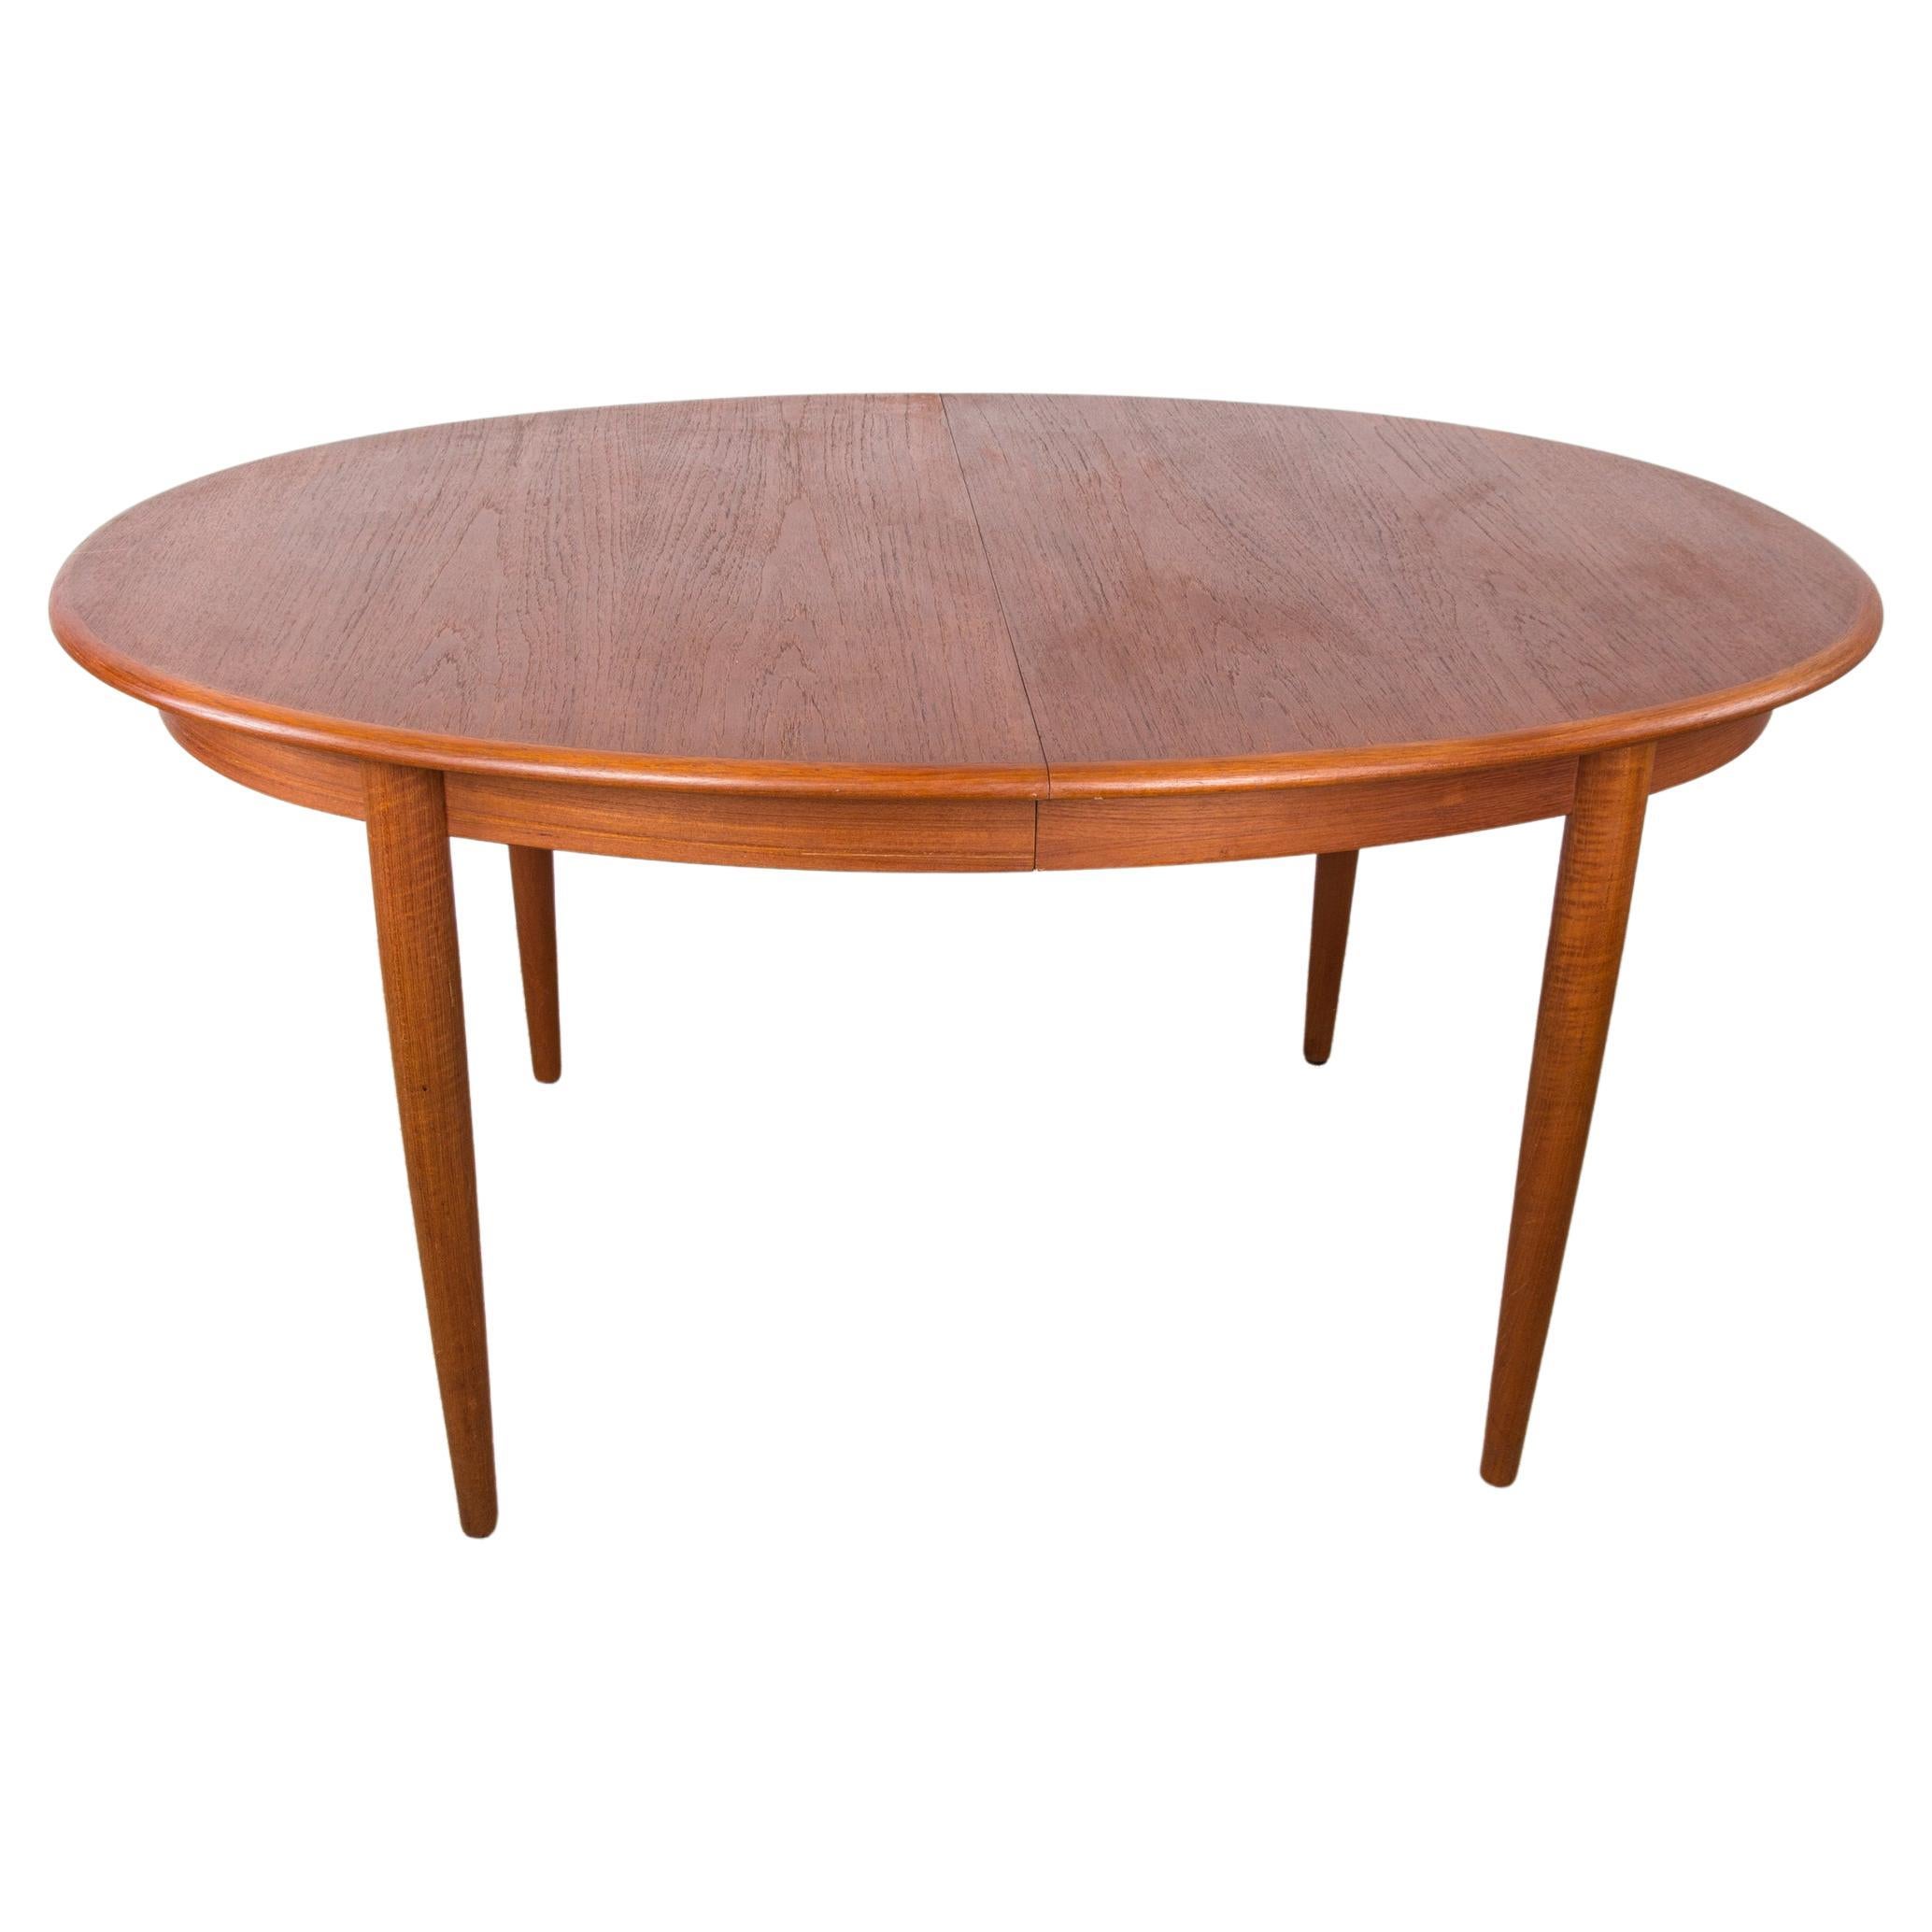 Danish oval teak dining table by Gudme Mobelfabrik 1960.